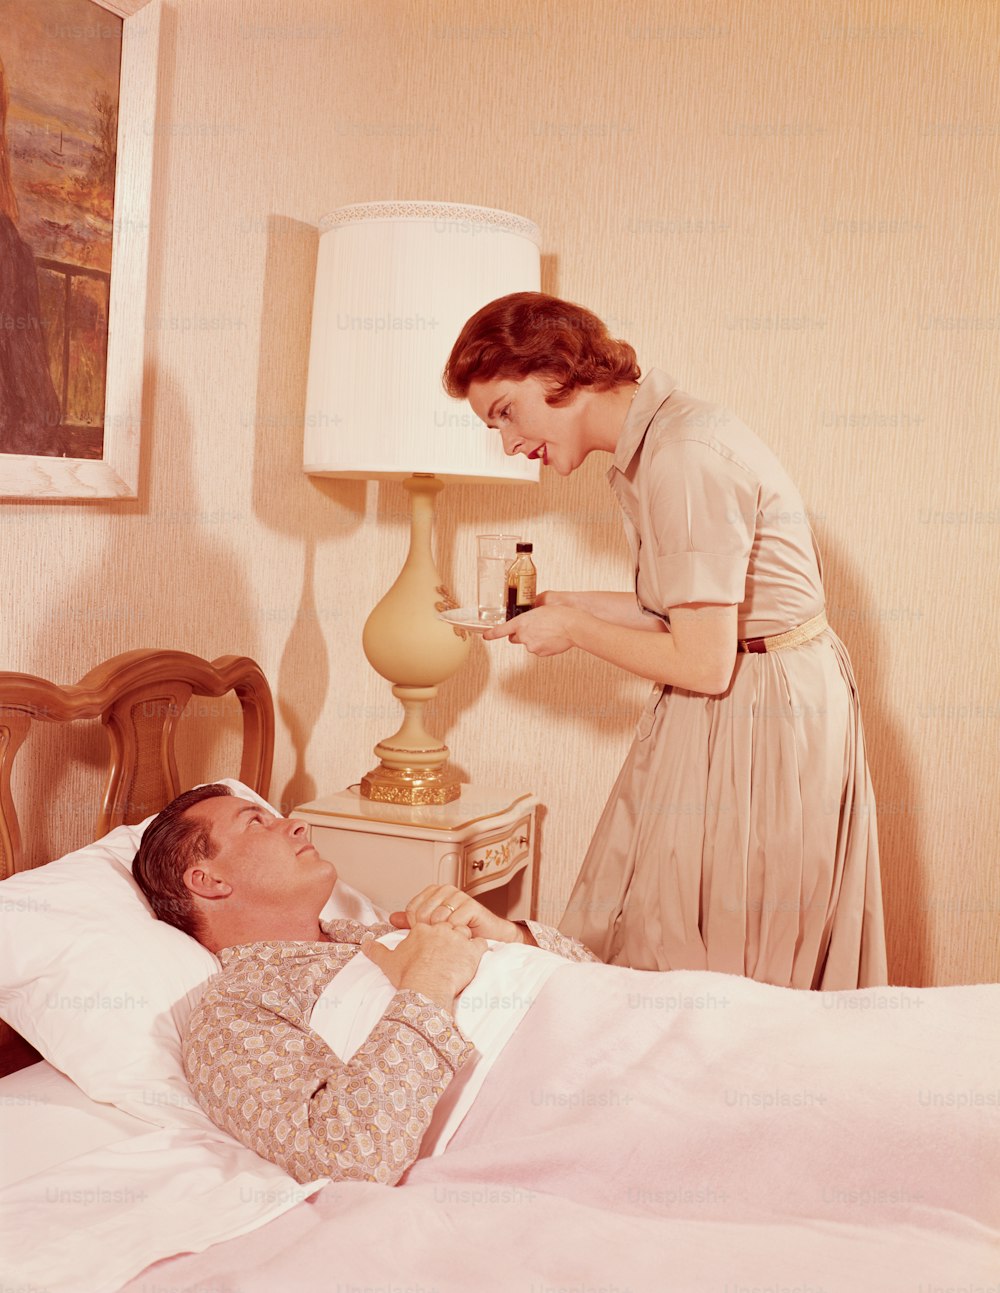 미국 - 1960년대경: 침대에서 아픈 남편에게 약 쟁반을 들고 있는 여성.